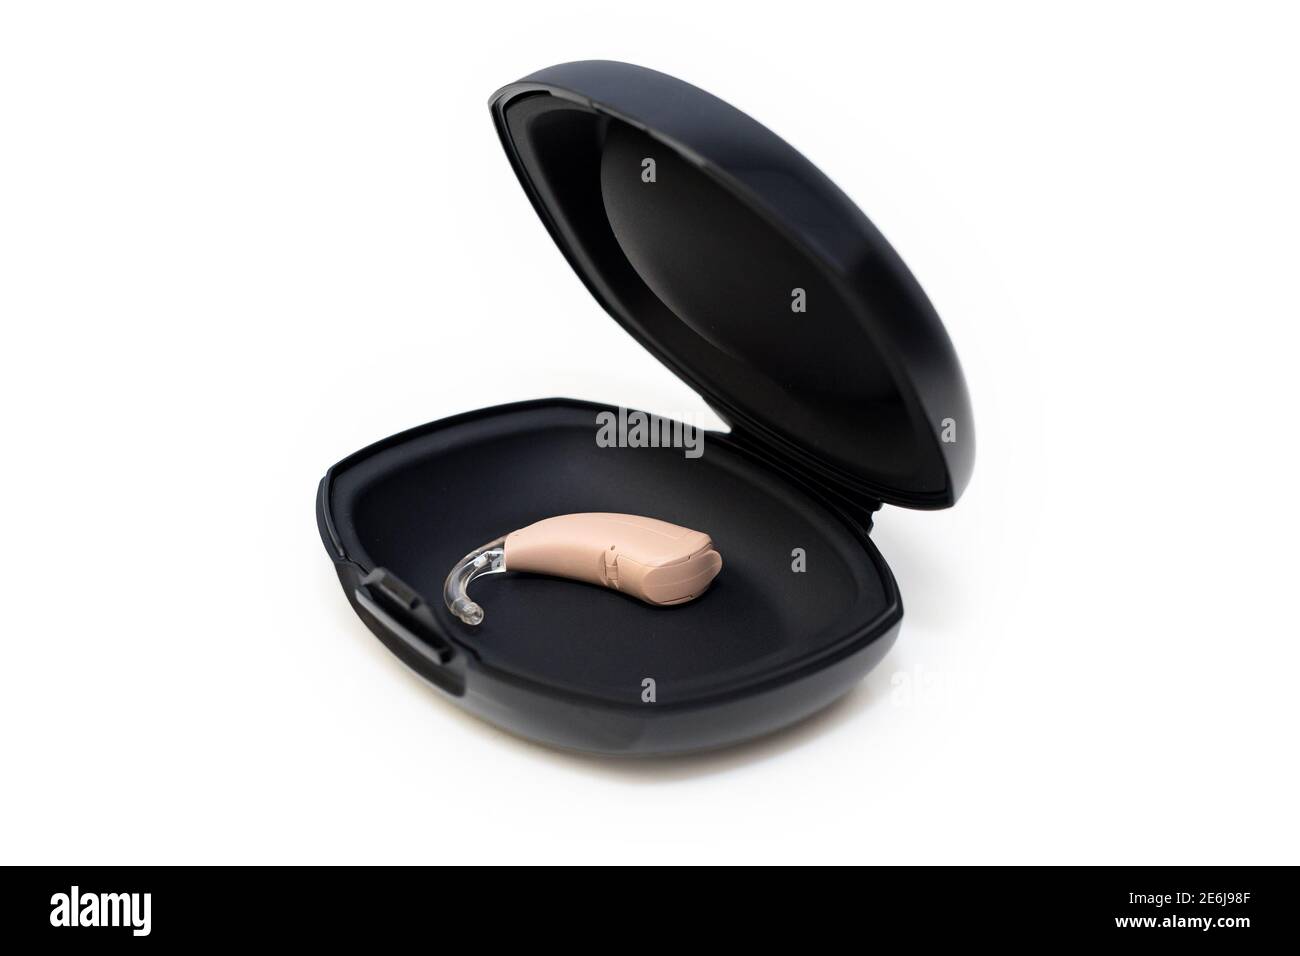 Mikro-Hörgerät. Hörgerät in schwarzer Box auf weißem Hintergrund. Moderne digitale Technologie für gehörlose Menschen. Stockfoto